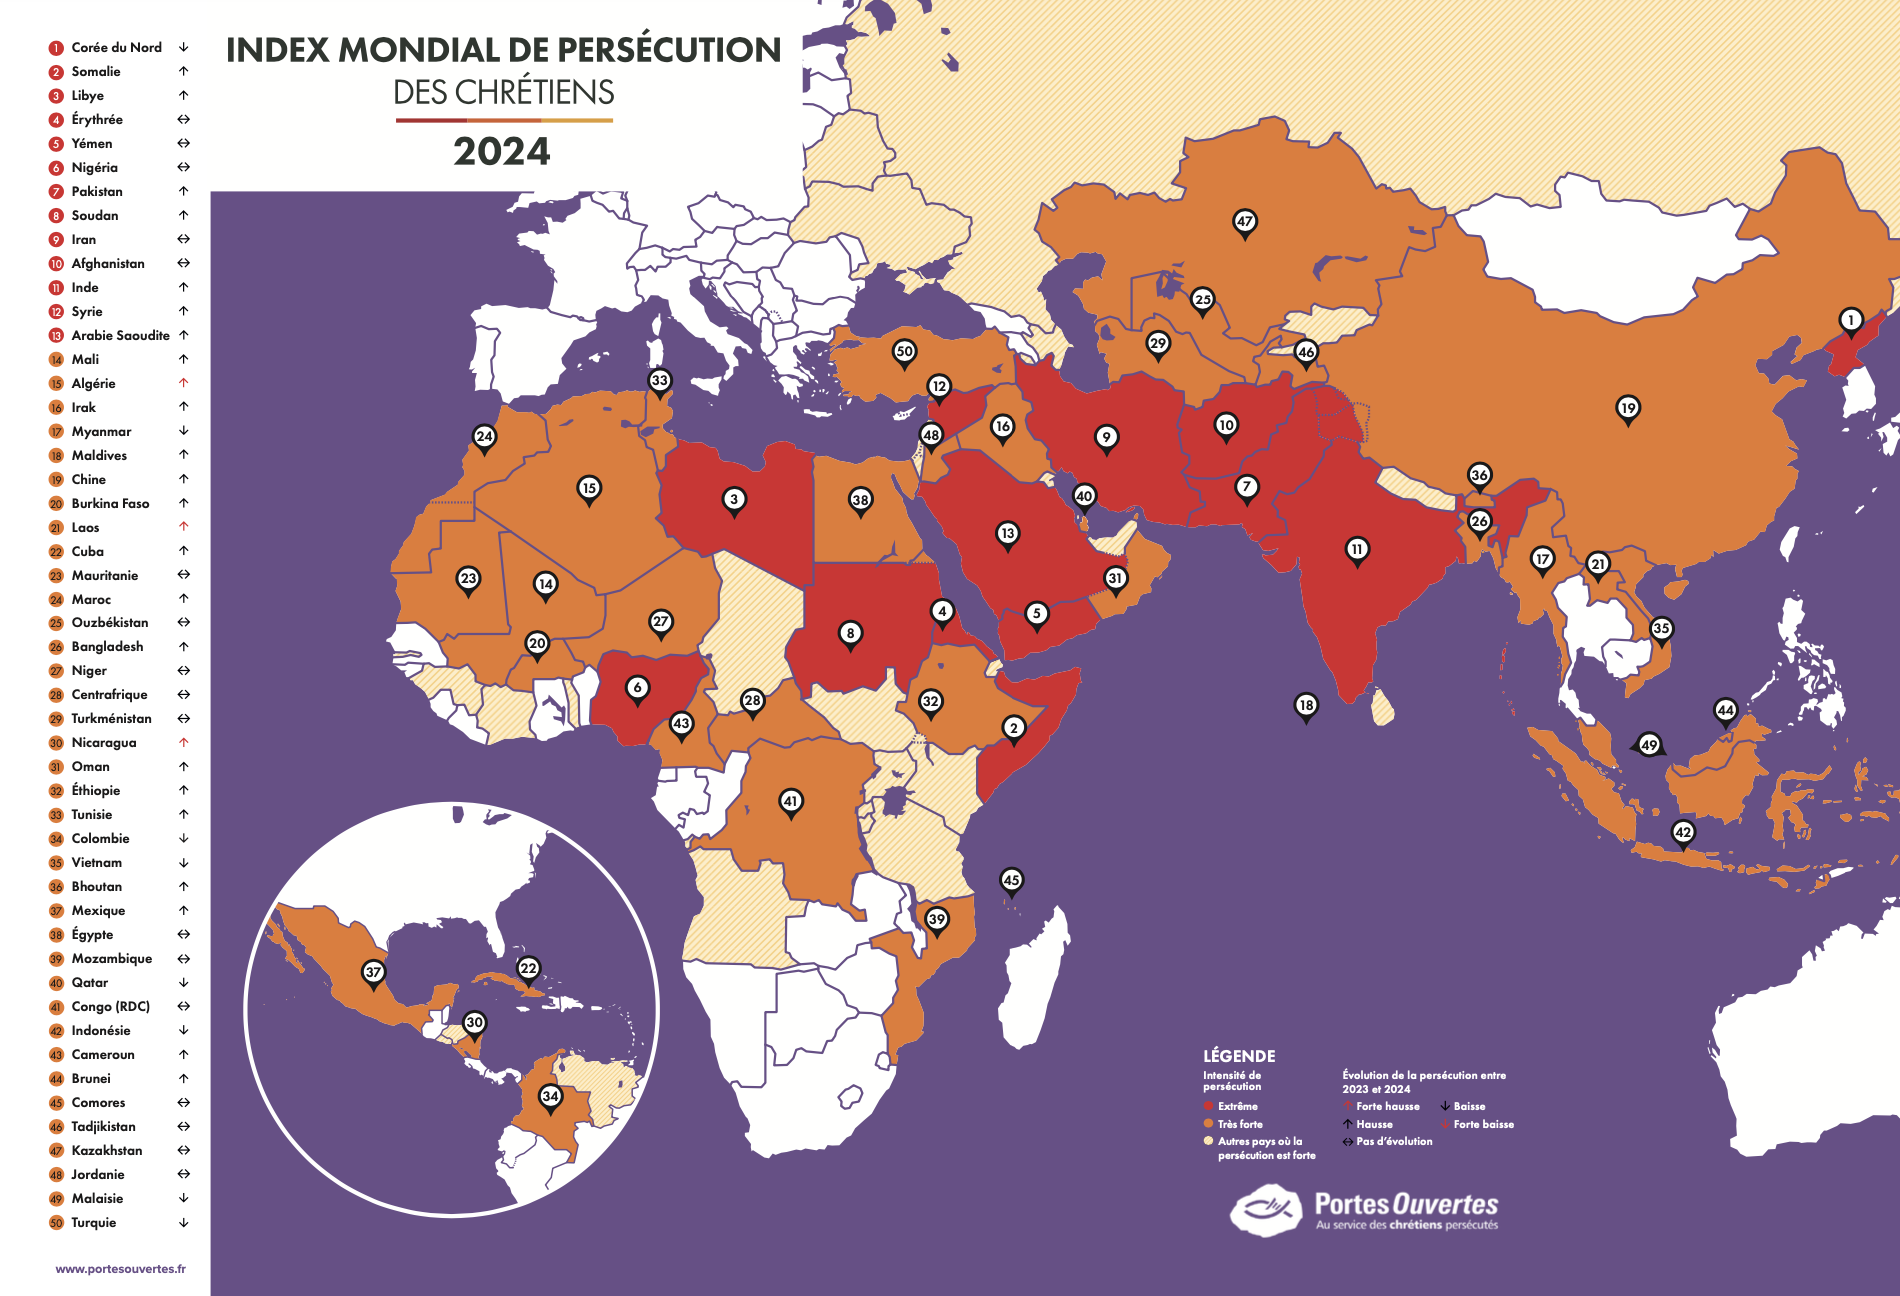 Index mondial de persécution des chrétiens 2024